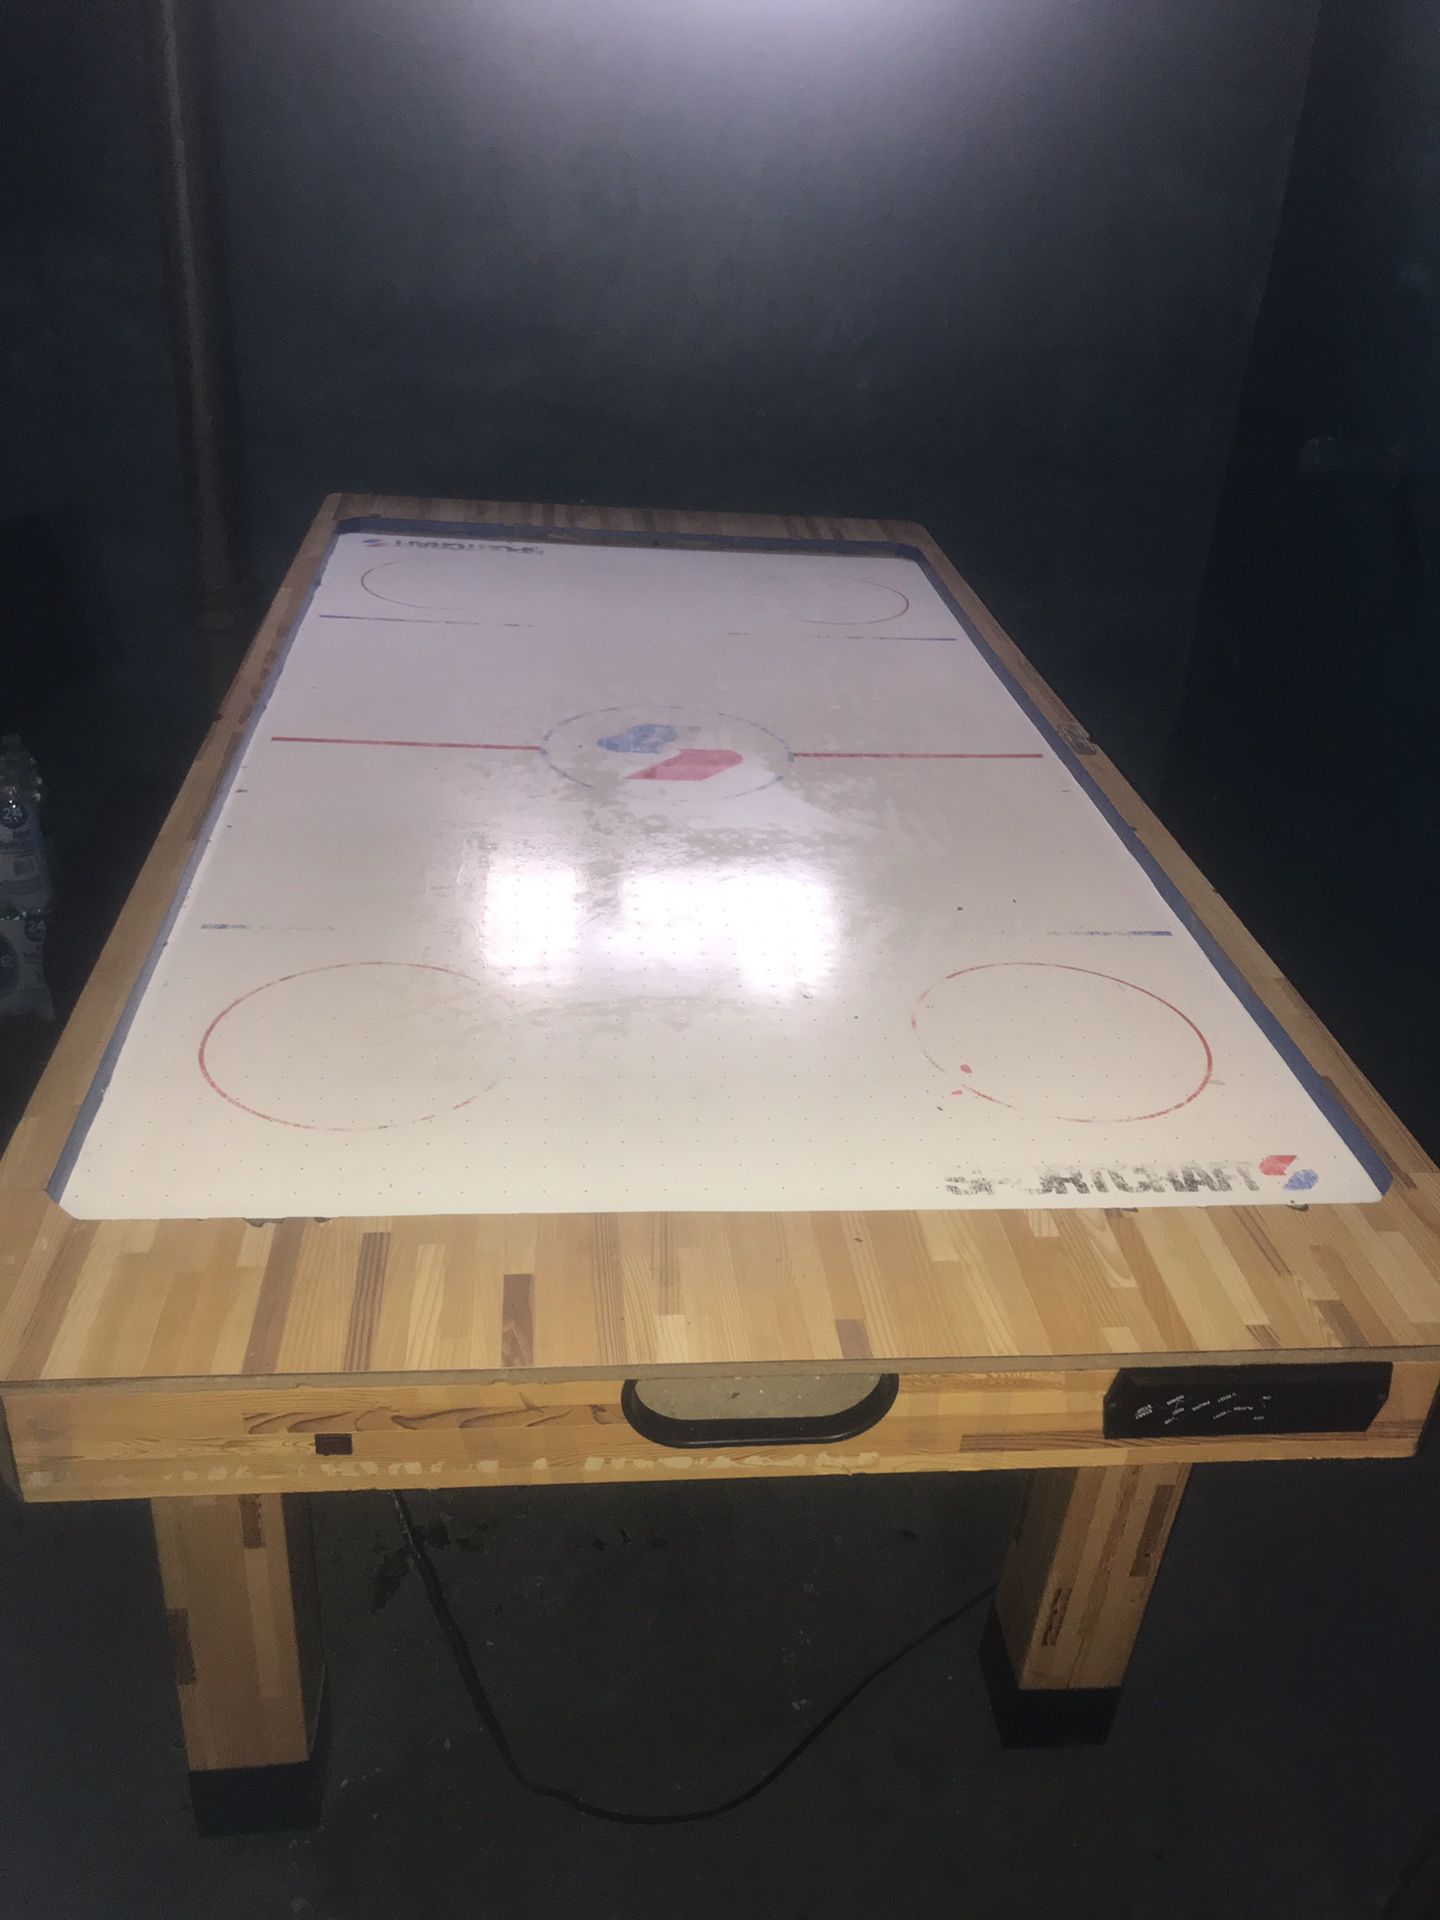 Air hockey table!